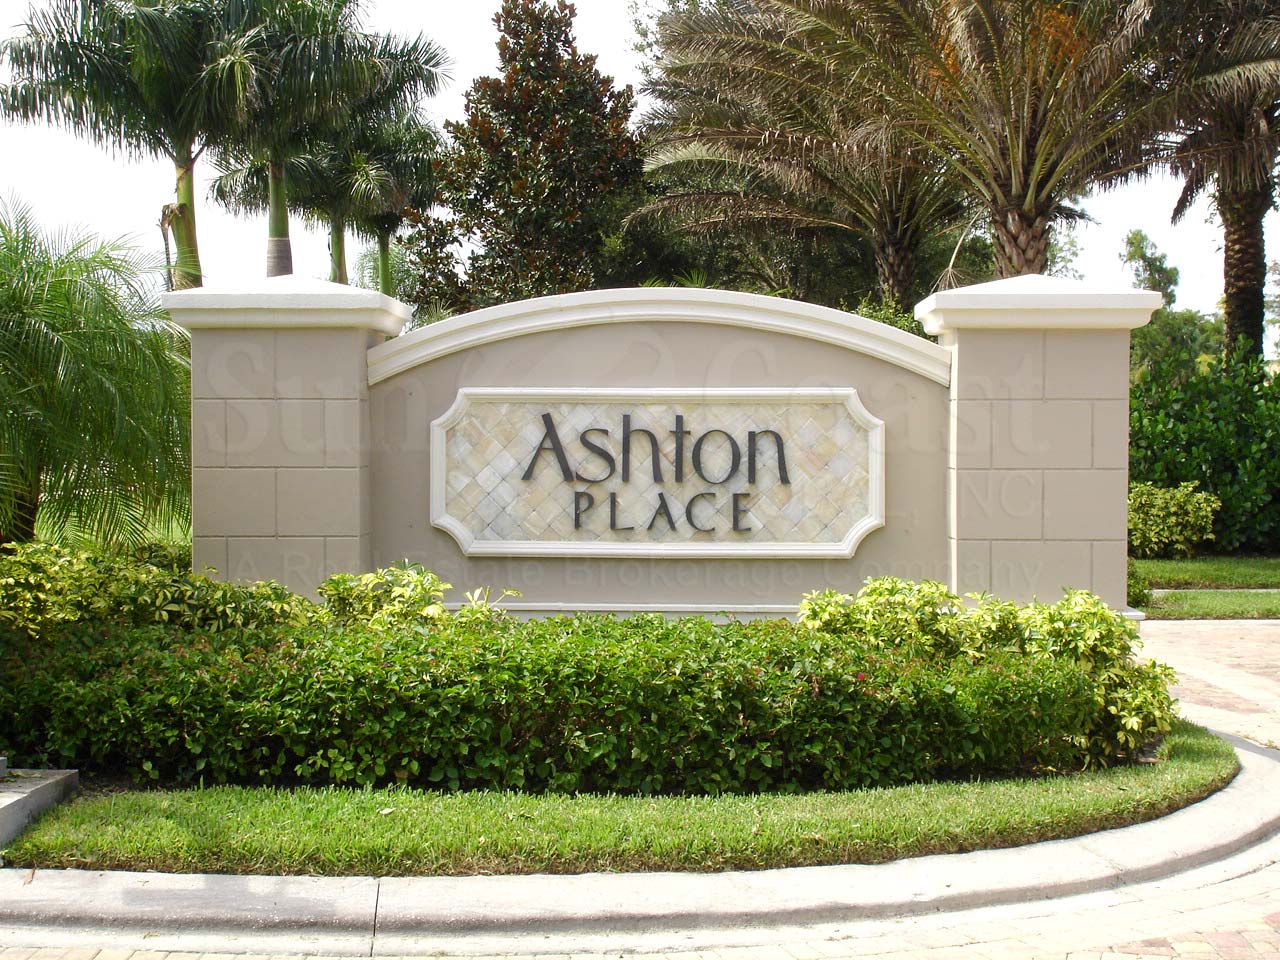 Ashton Place signage